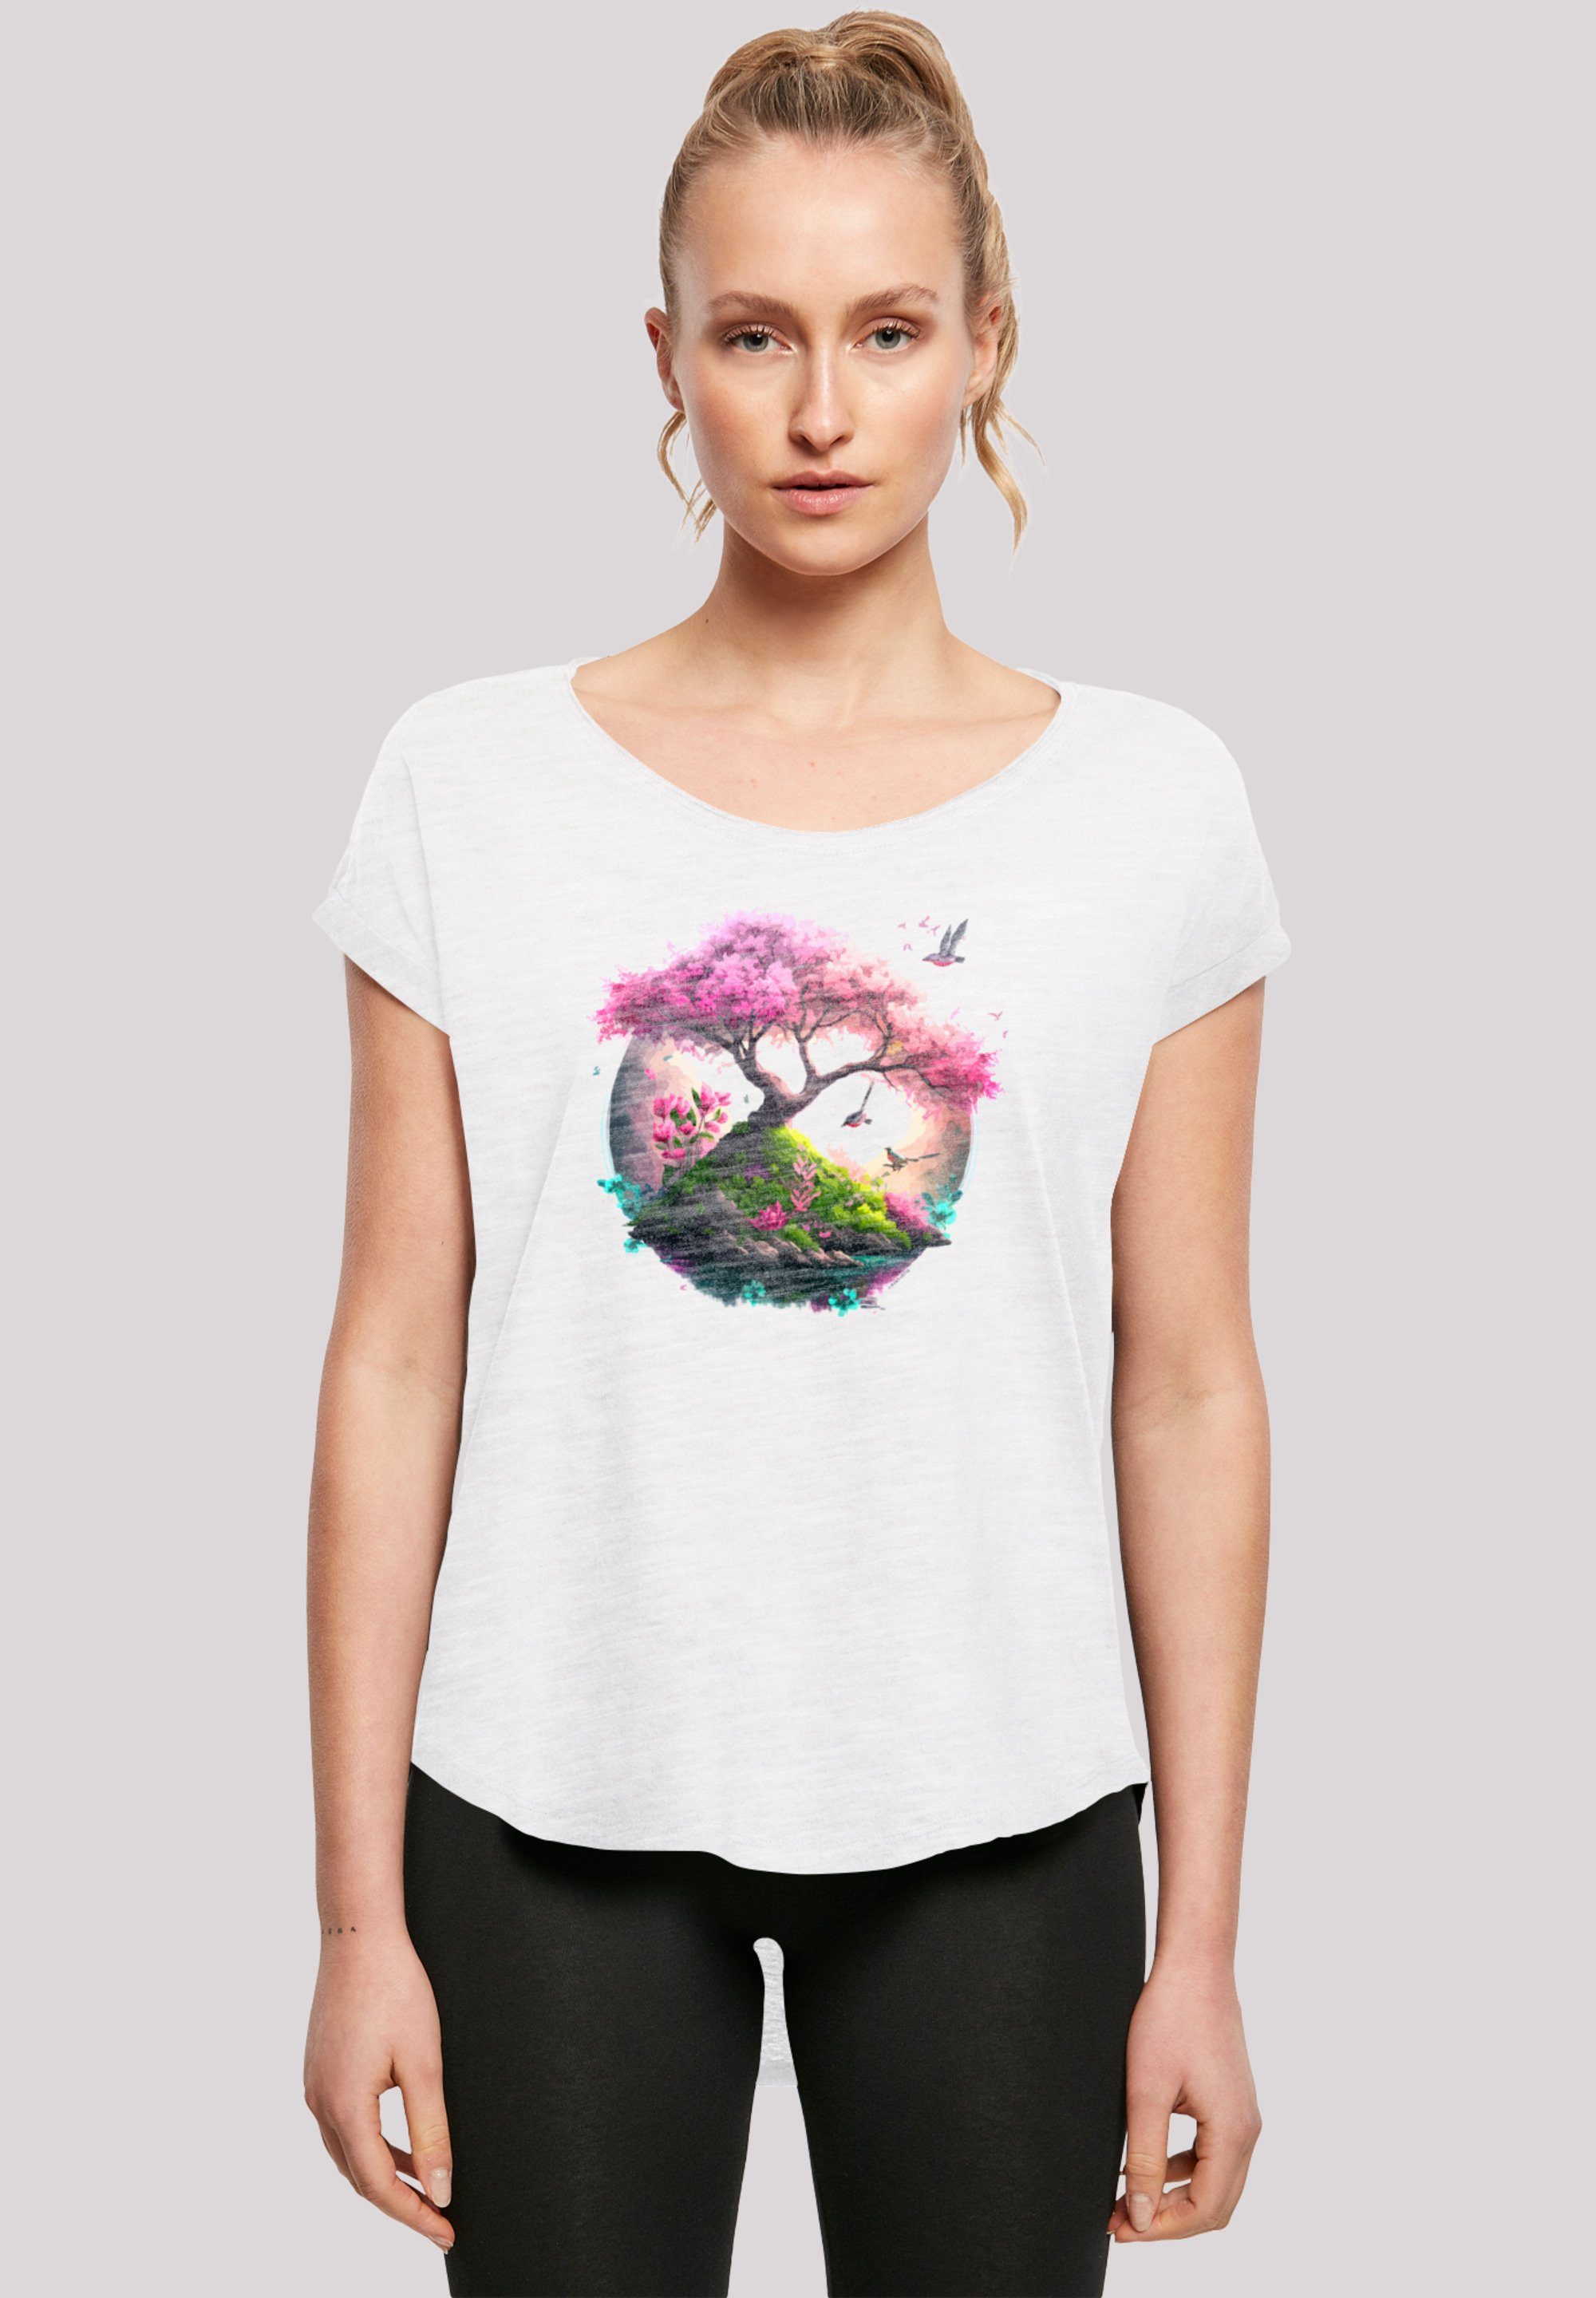 F4NT4STIC T-Shirt Kirschblüten Baum Print weiß